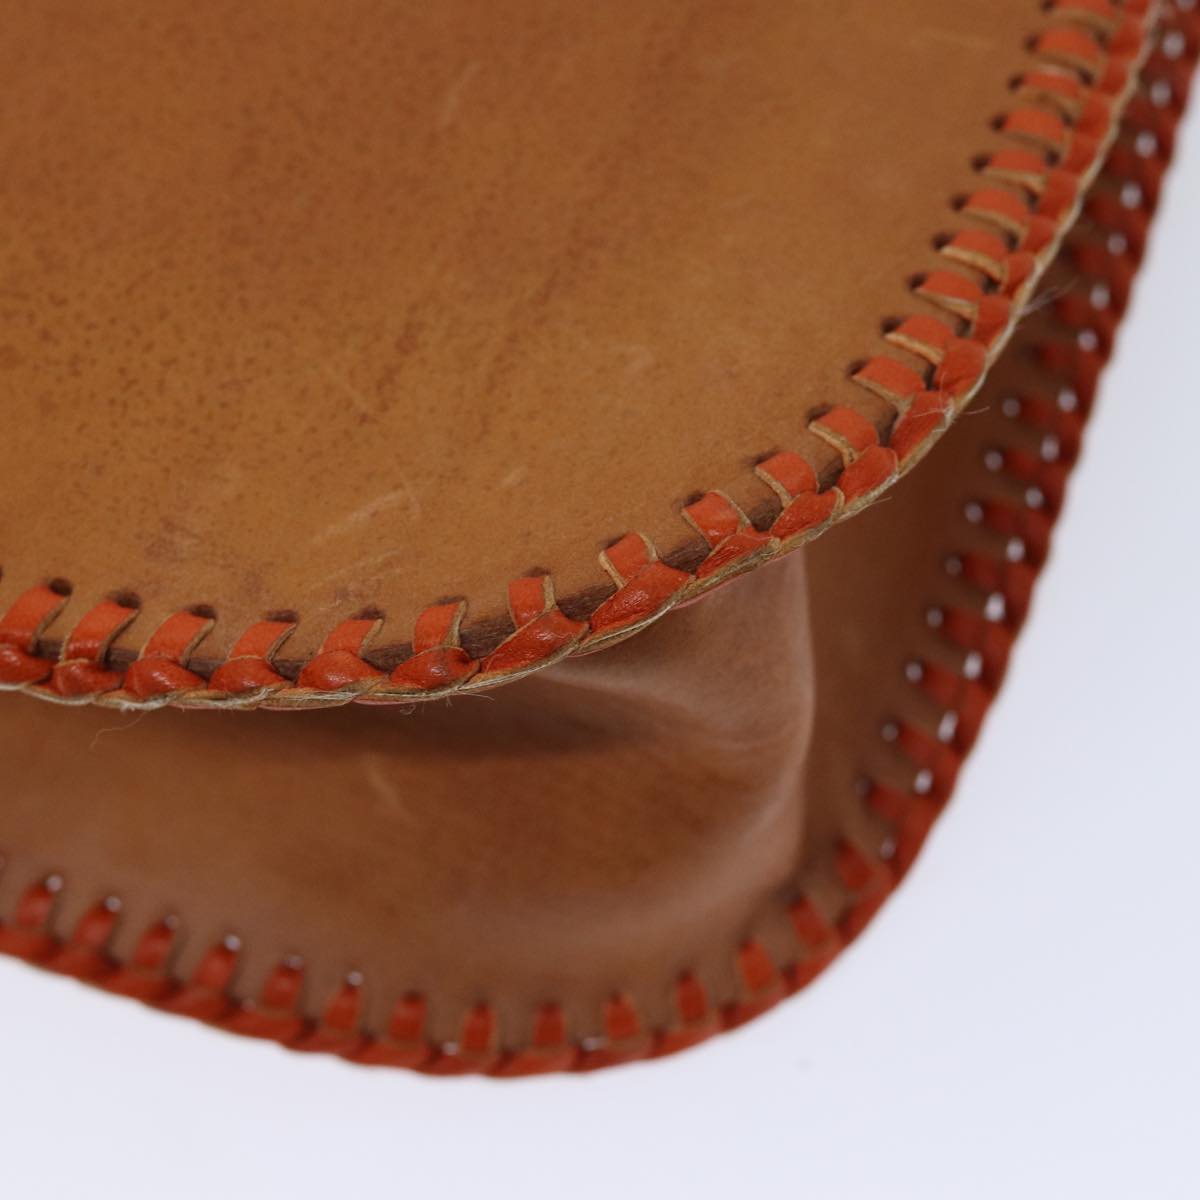 Miu Miu Shoulder Bag Leather Brown Auth 72496